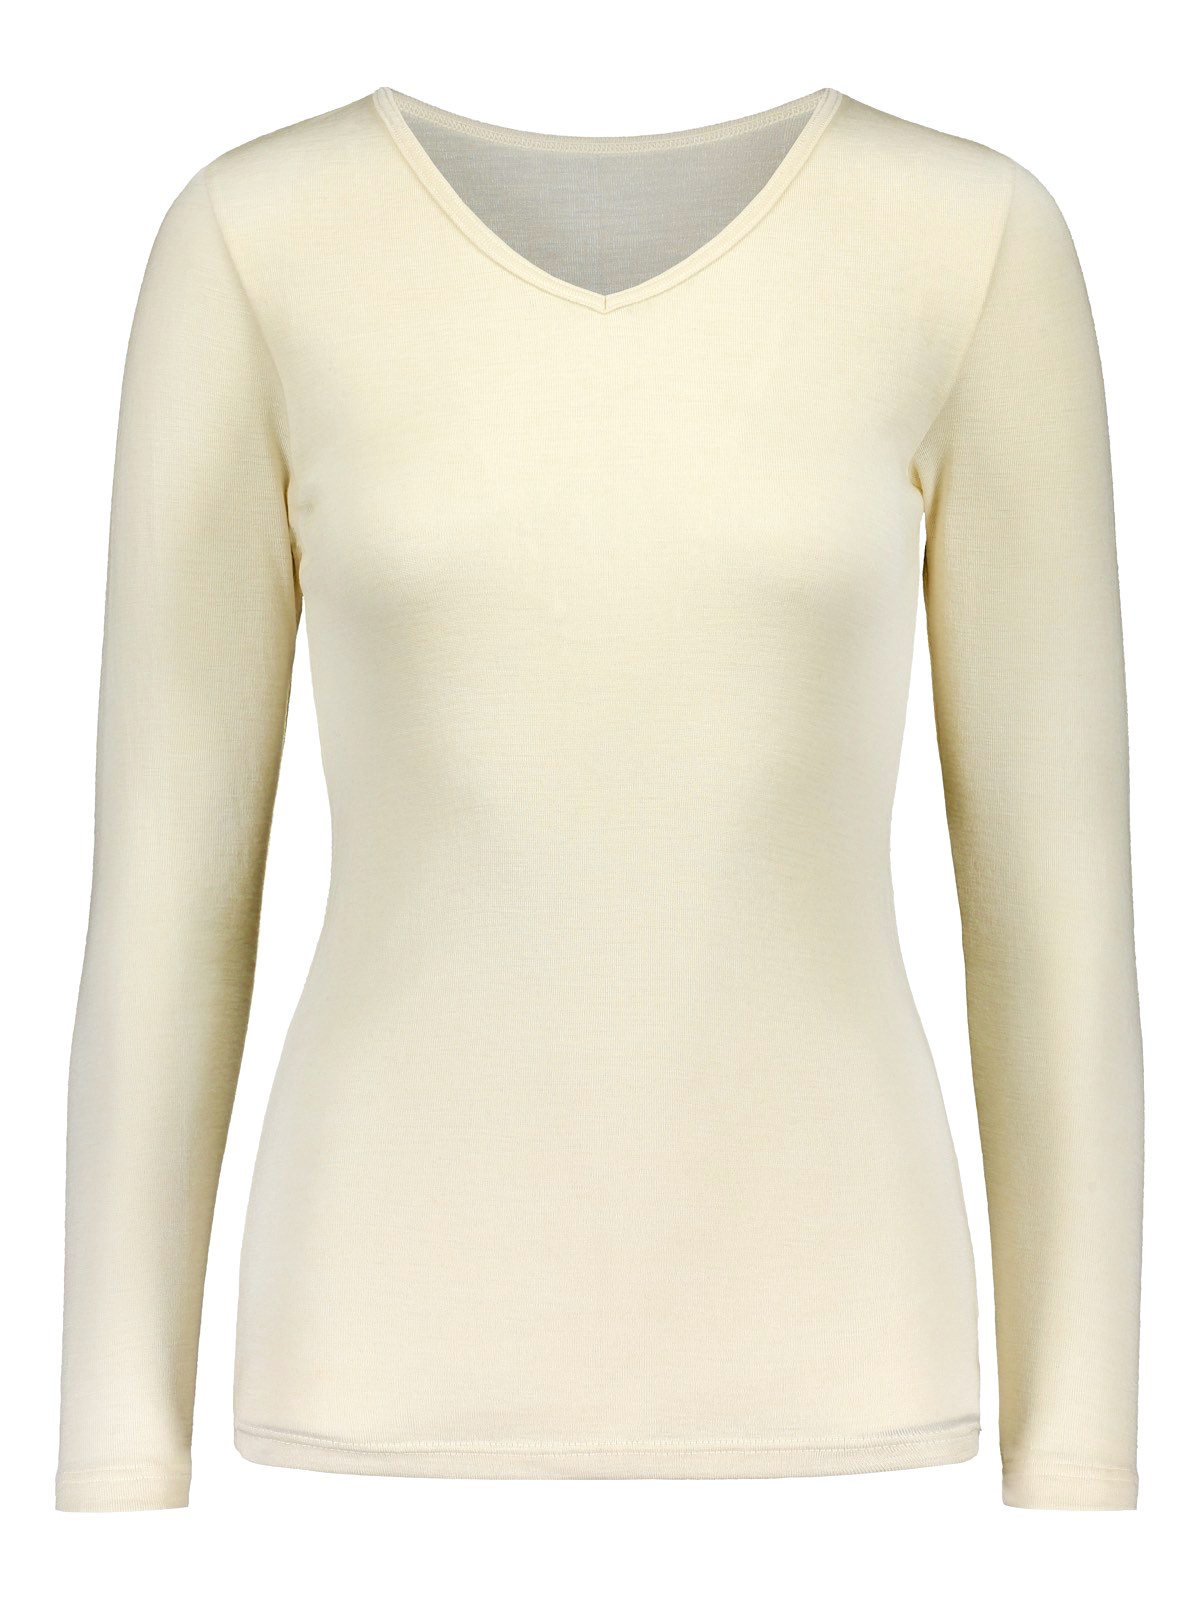 Ruskovillan naisten valkoinen pitkähihainen aluspaita silkkivillaa